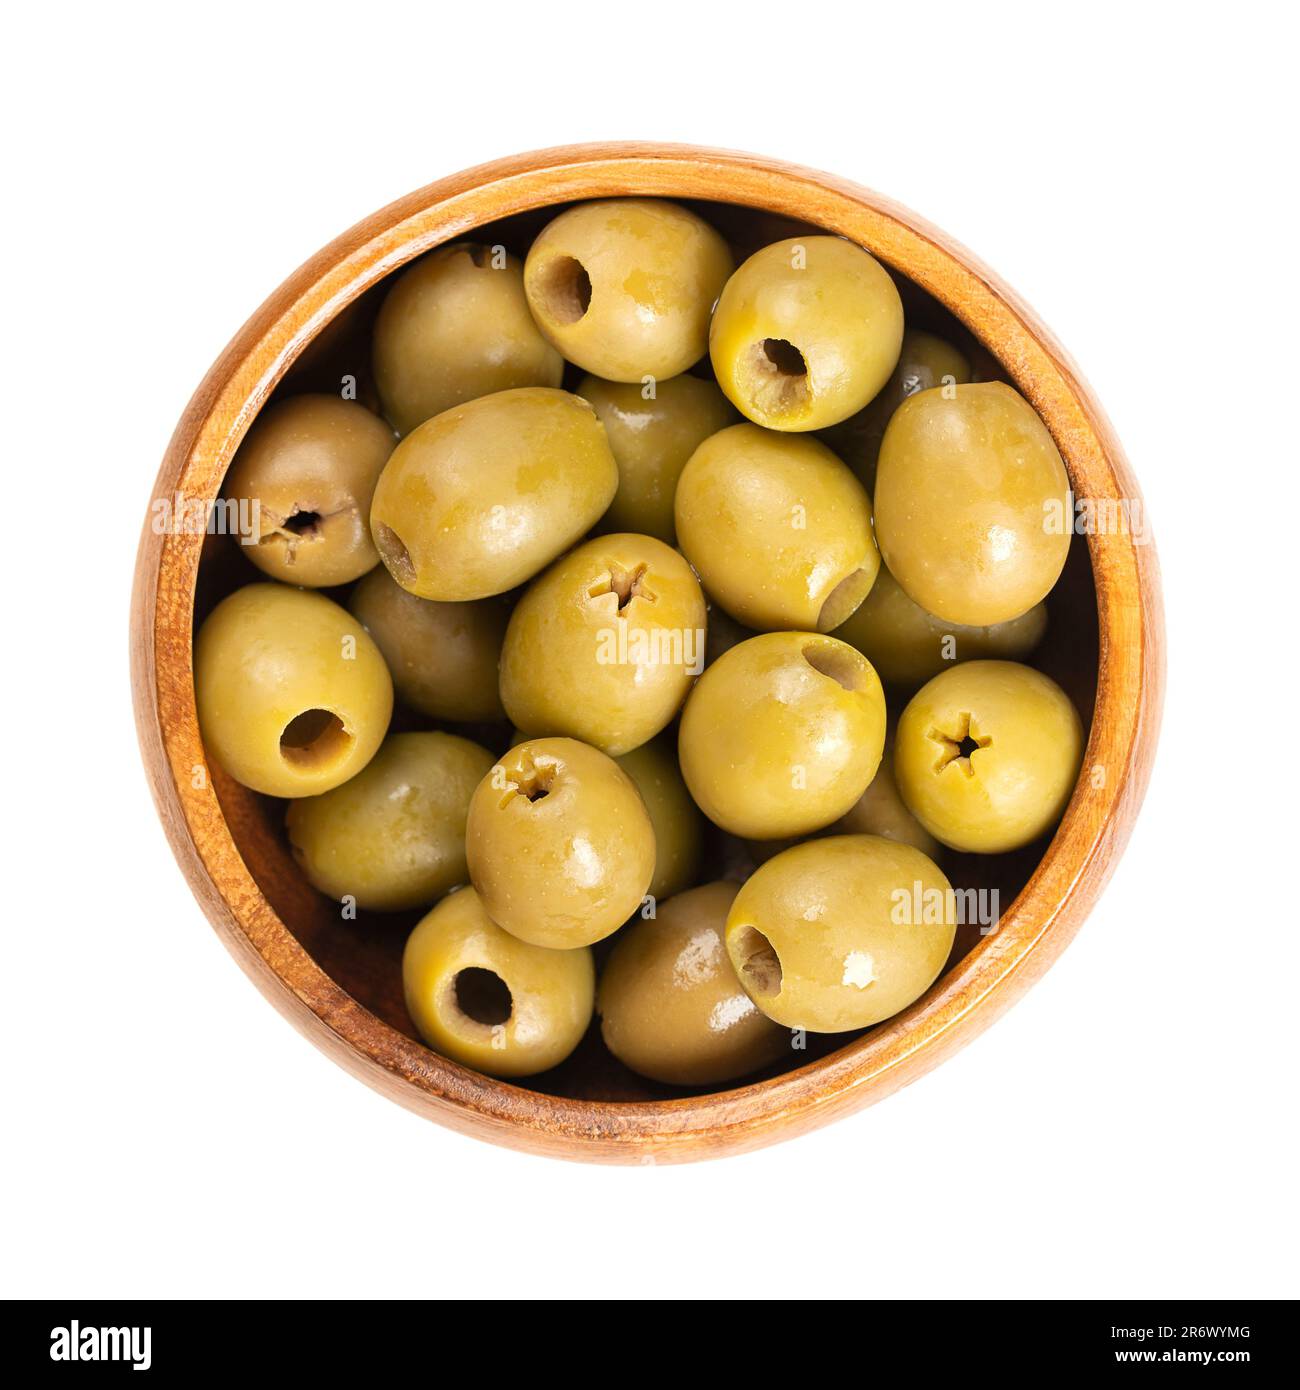 Olives vertes dénoyautées, dans un bol en bois. Olives biologiques d'Italie. Cueillies d'olives semi-mûres et de couleur tournante, de couleur vert rougeâtre. Banque D'Images